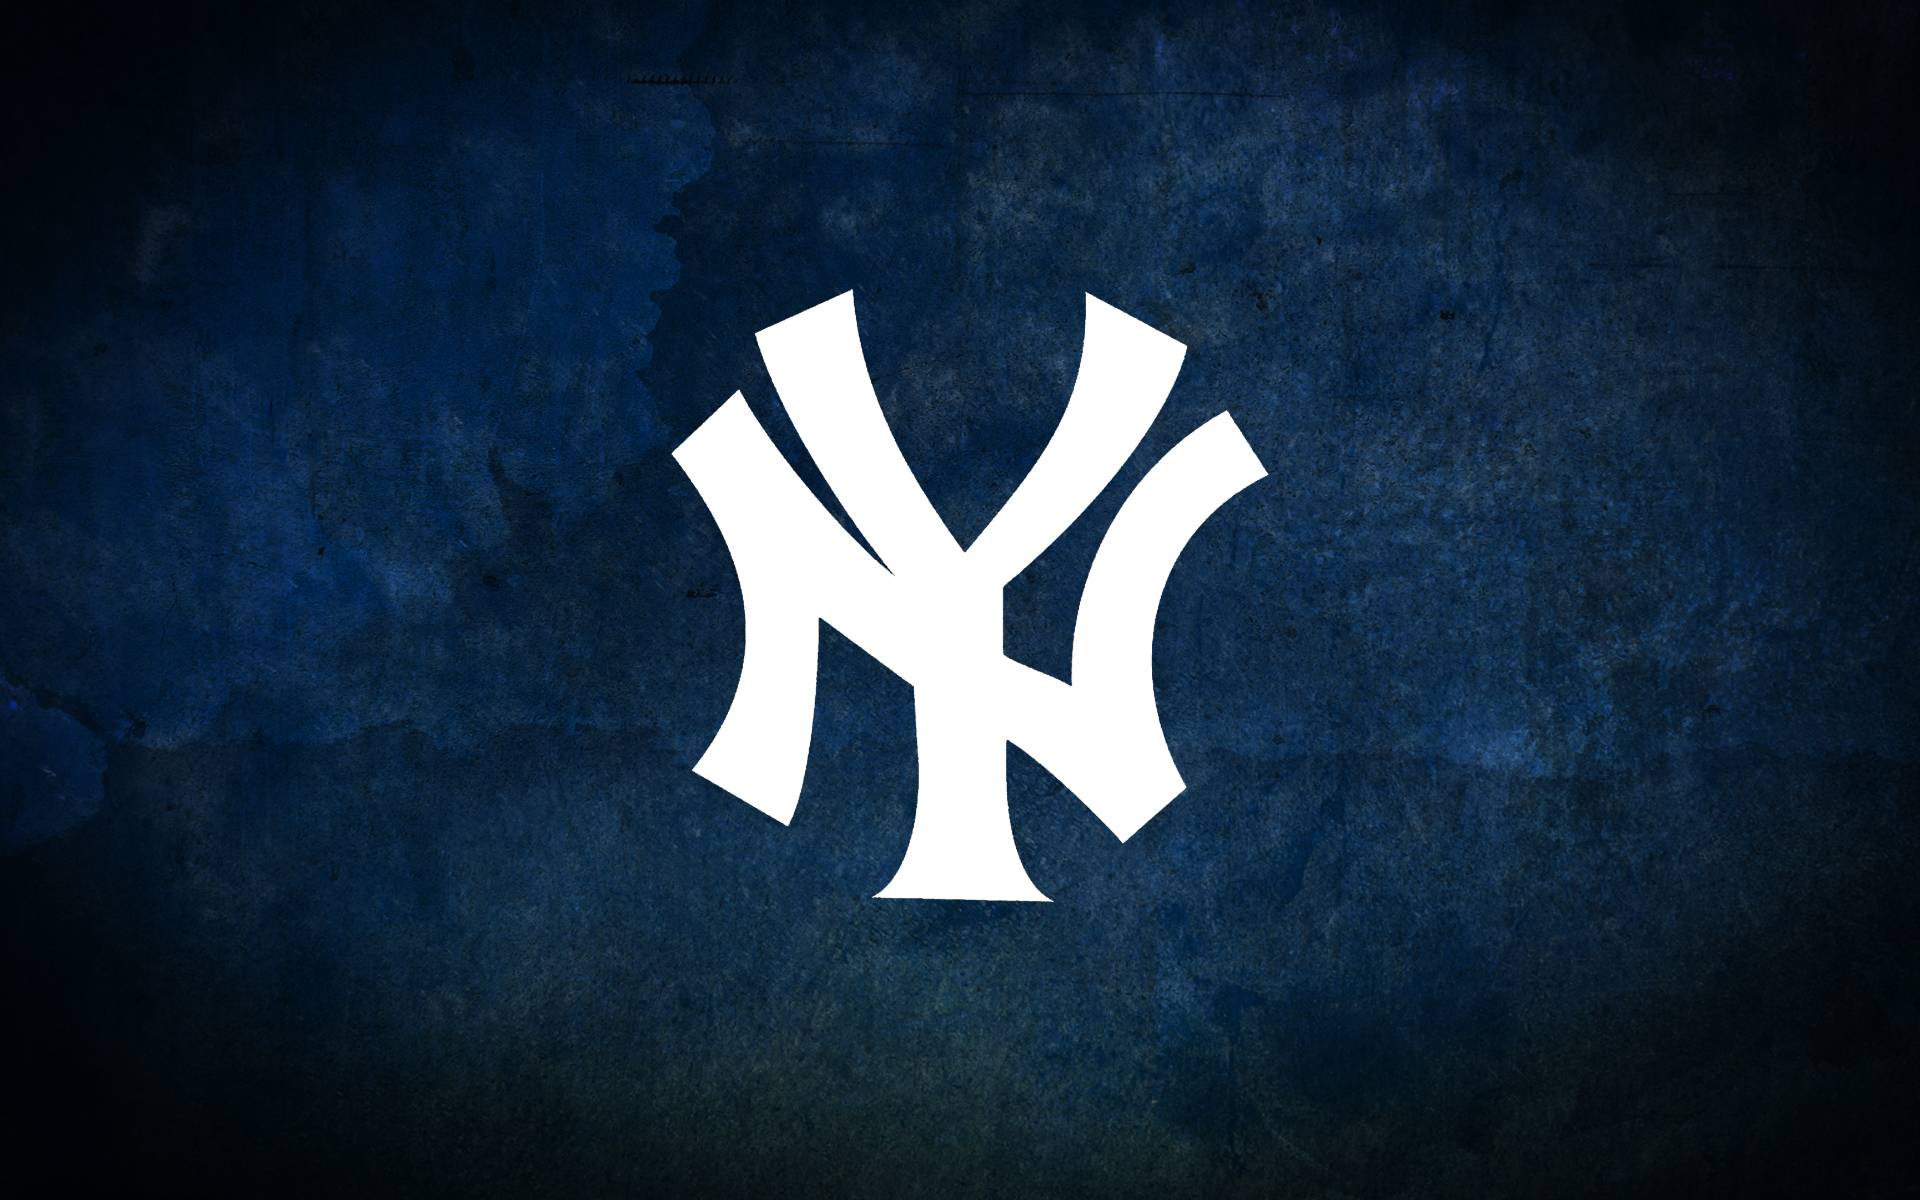 New York Yankees wallpapers